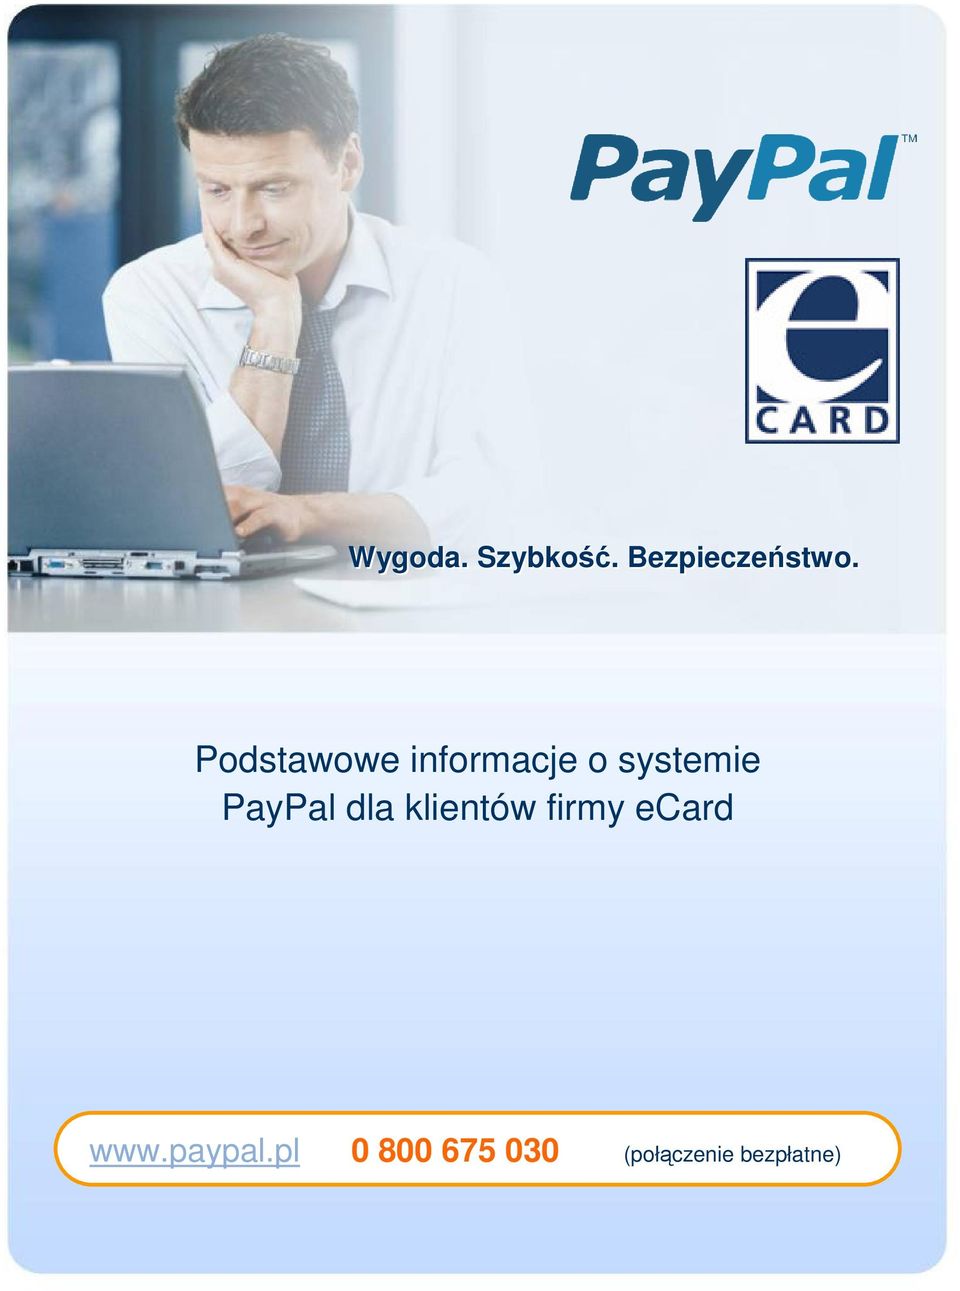 PayPal dla klientów firmy ecard www.